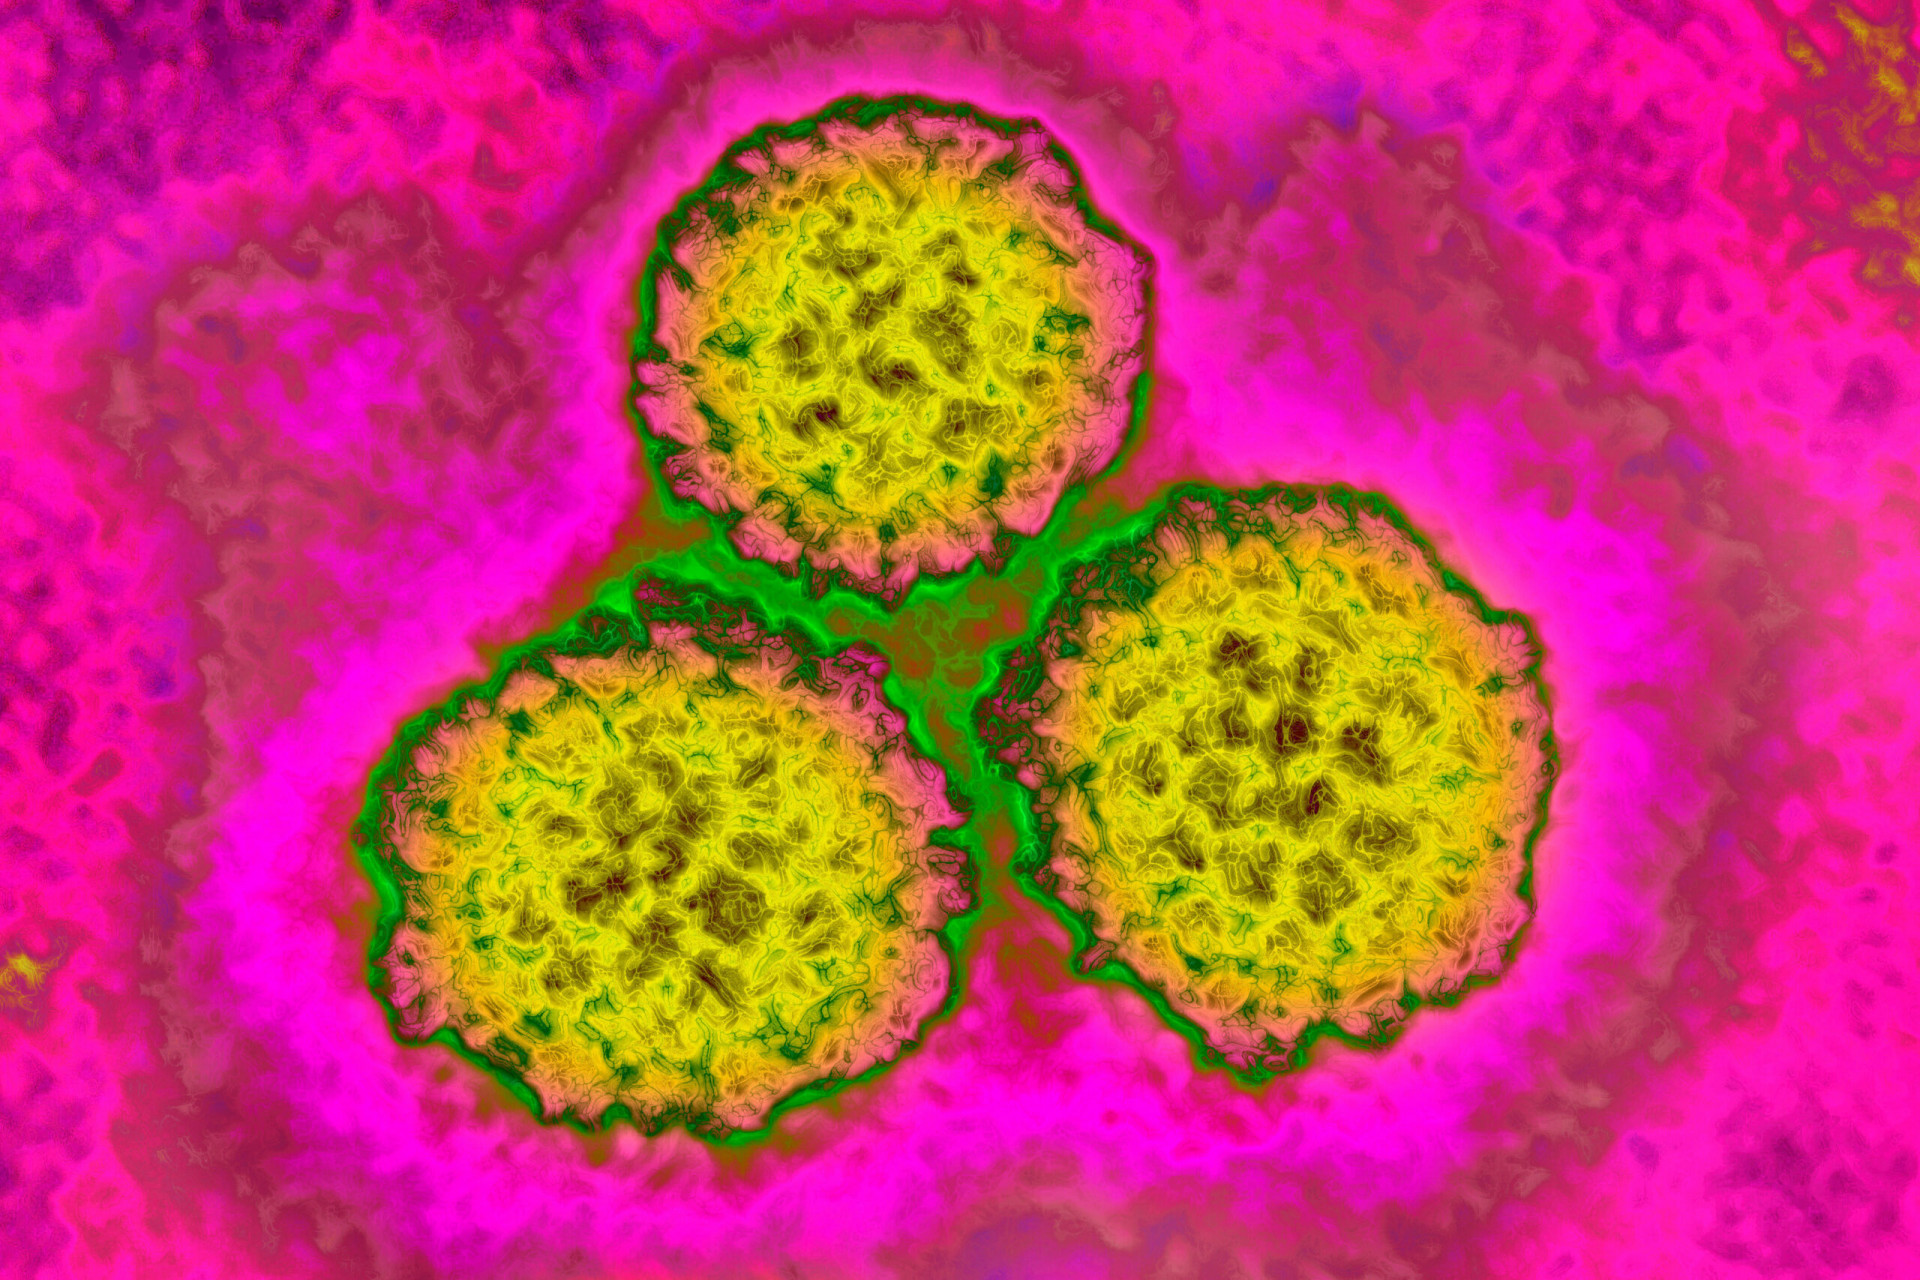 revistapazes.com - Vacina contra HPV reduz taxas de câncer no útero em até 87% em mulheres